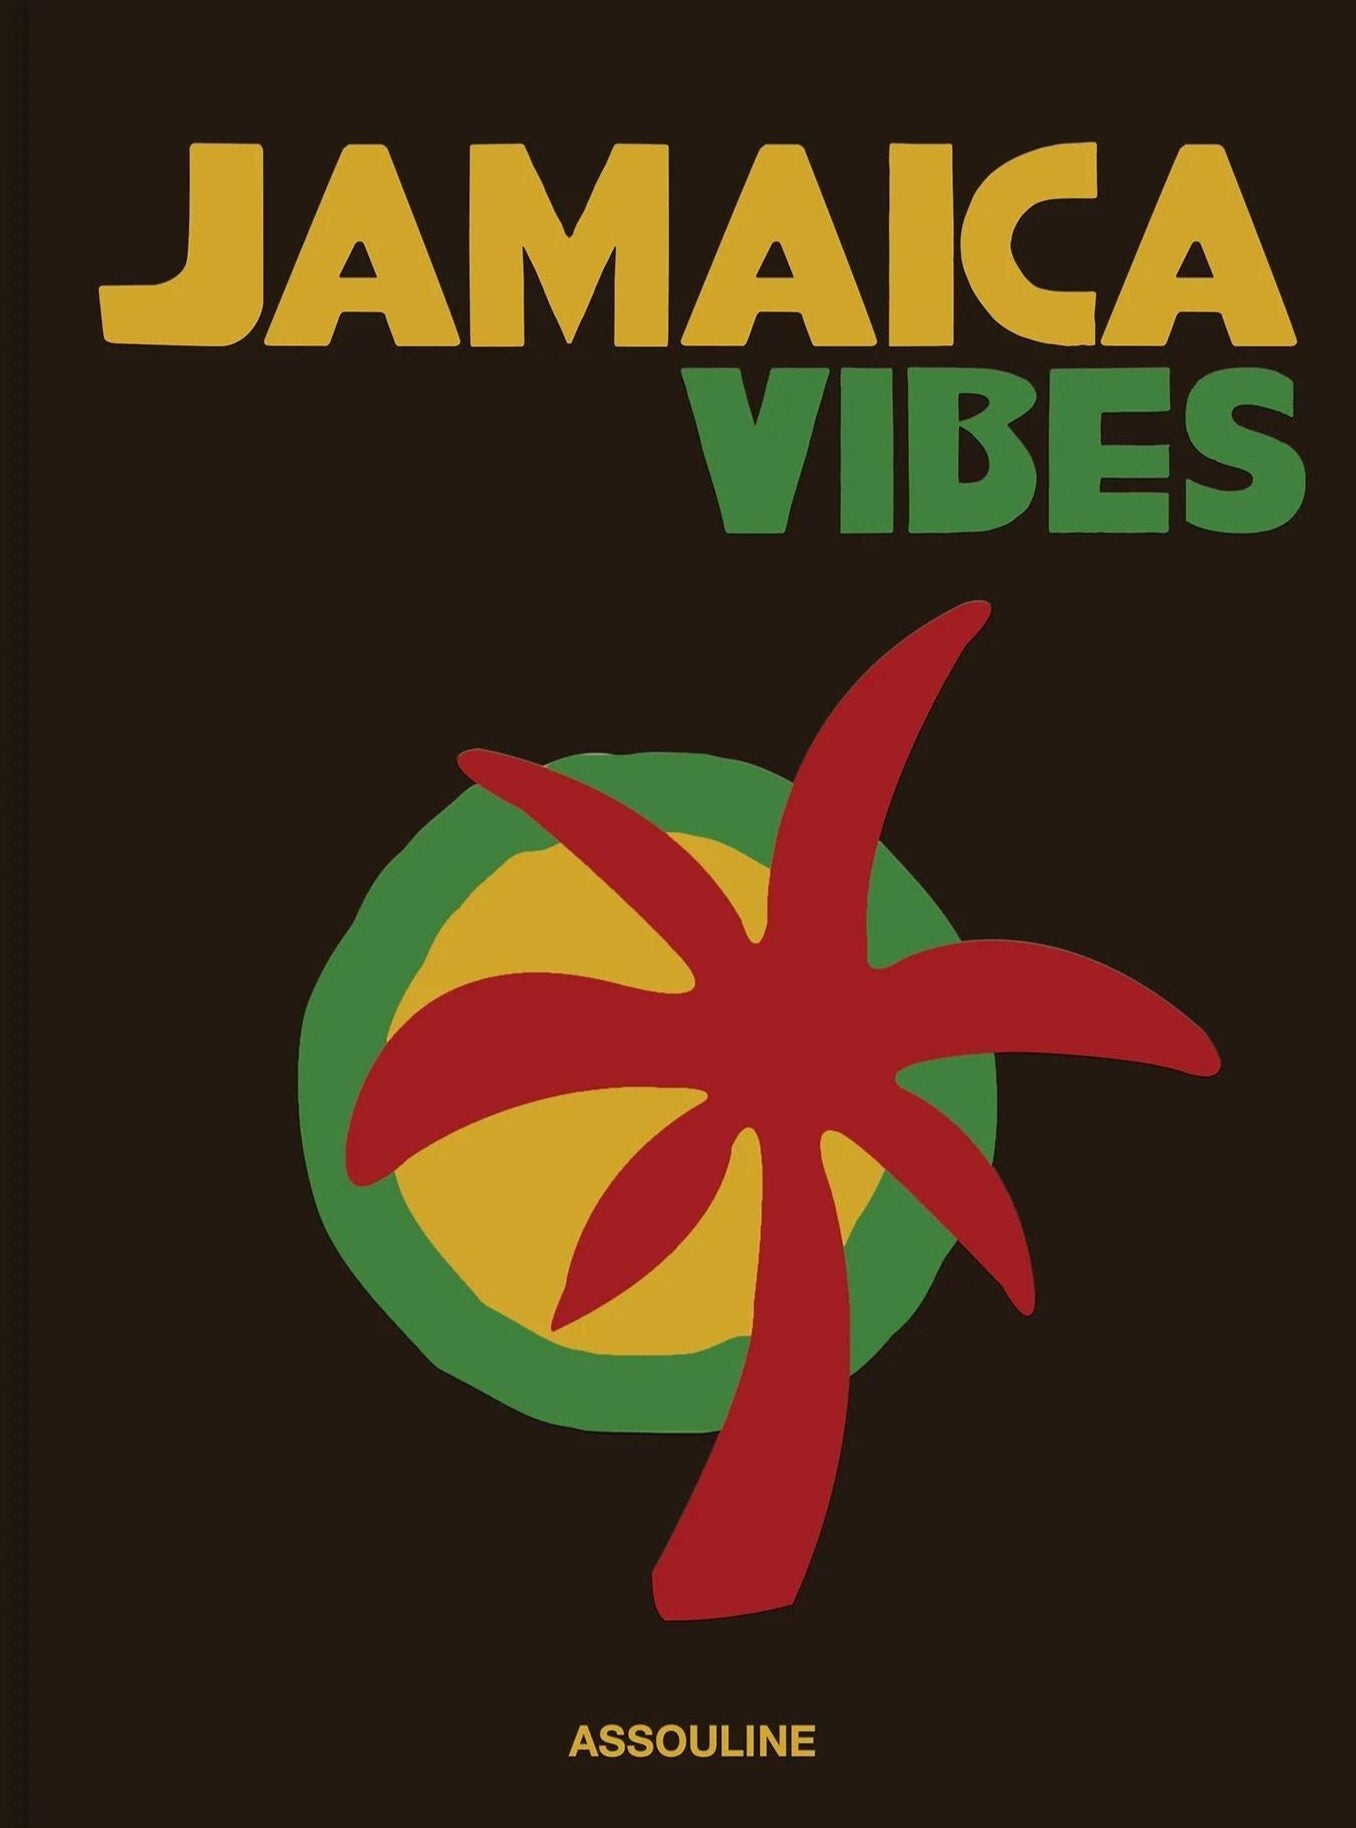 Assouline Jamaica vibber